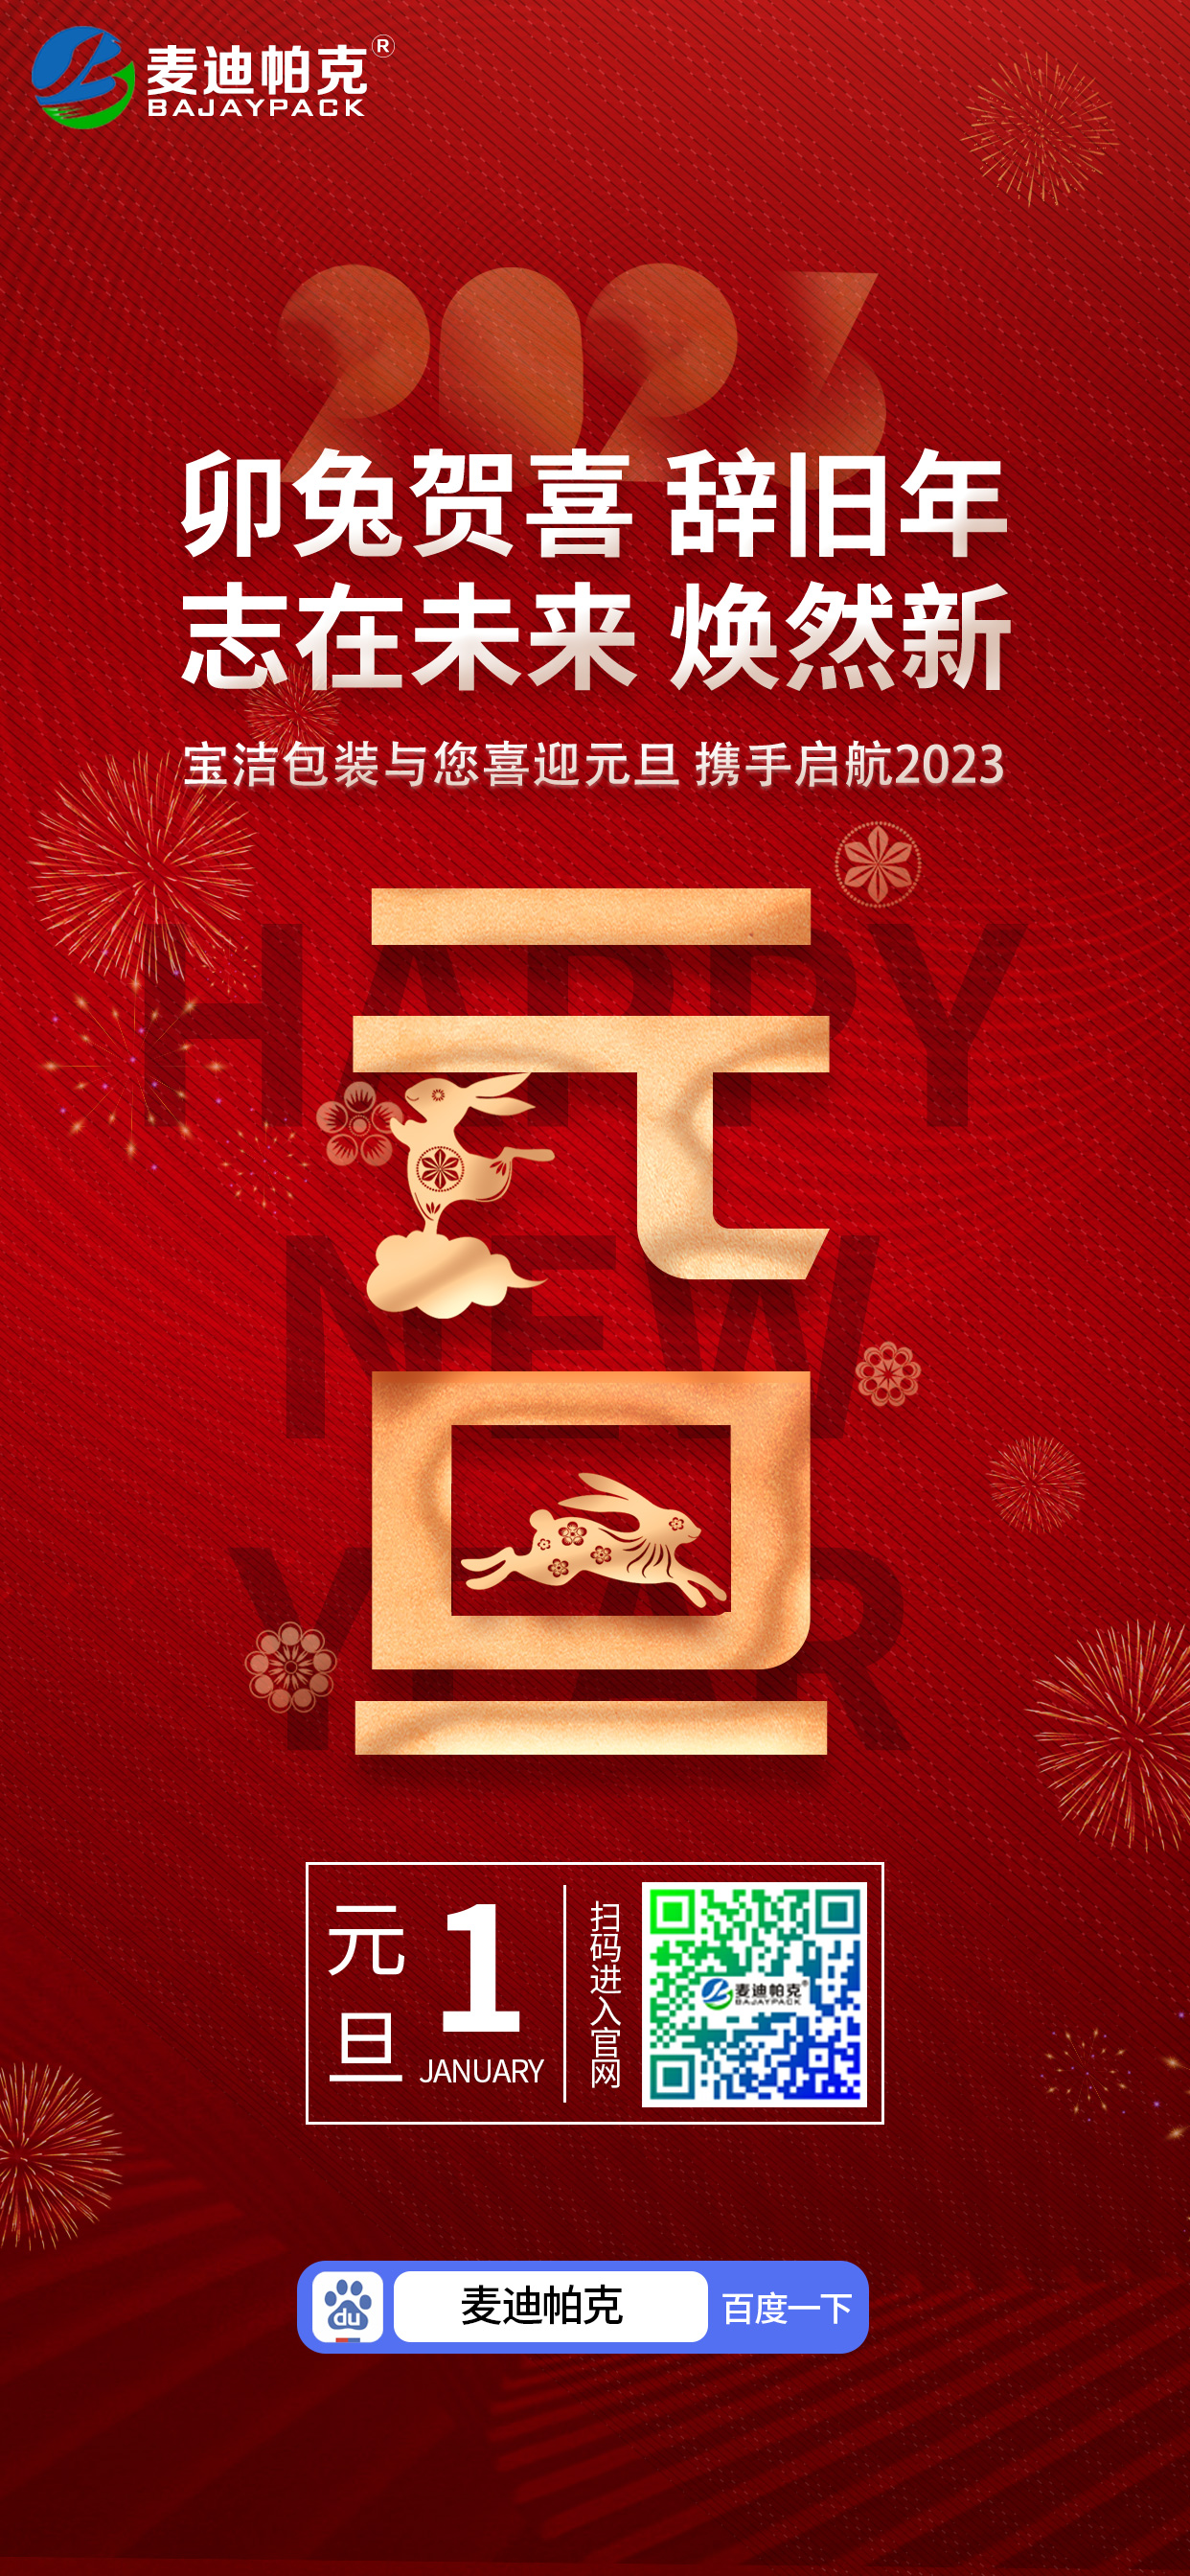 安慶市寶潔包裝有限公司祝大家元旦快樂！